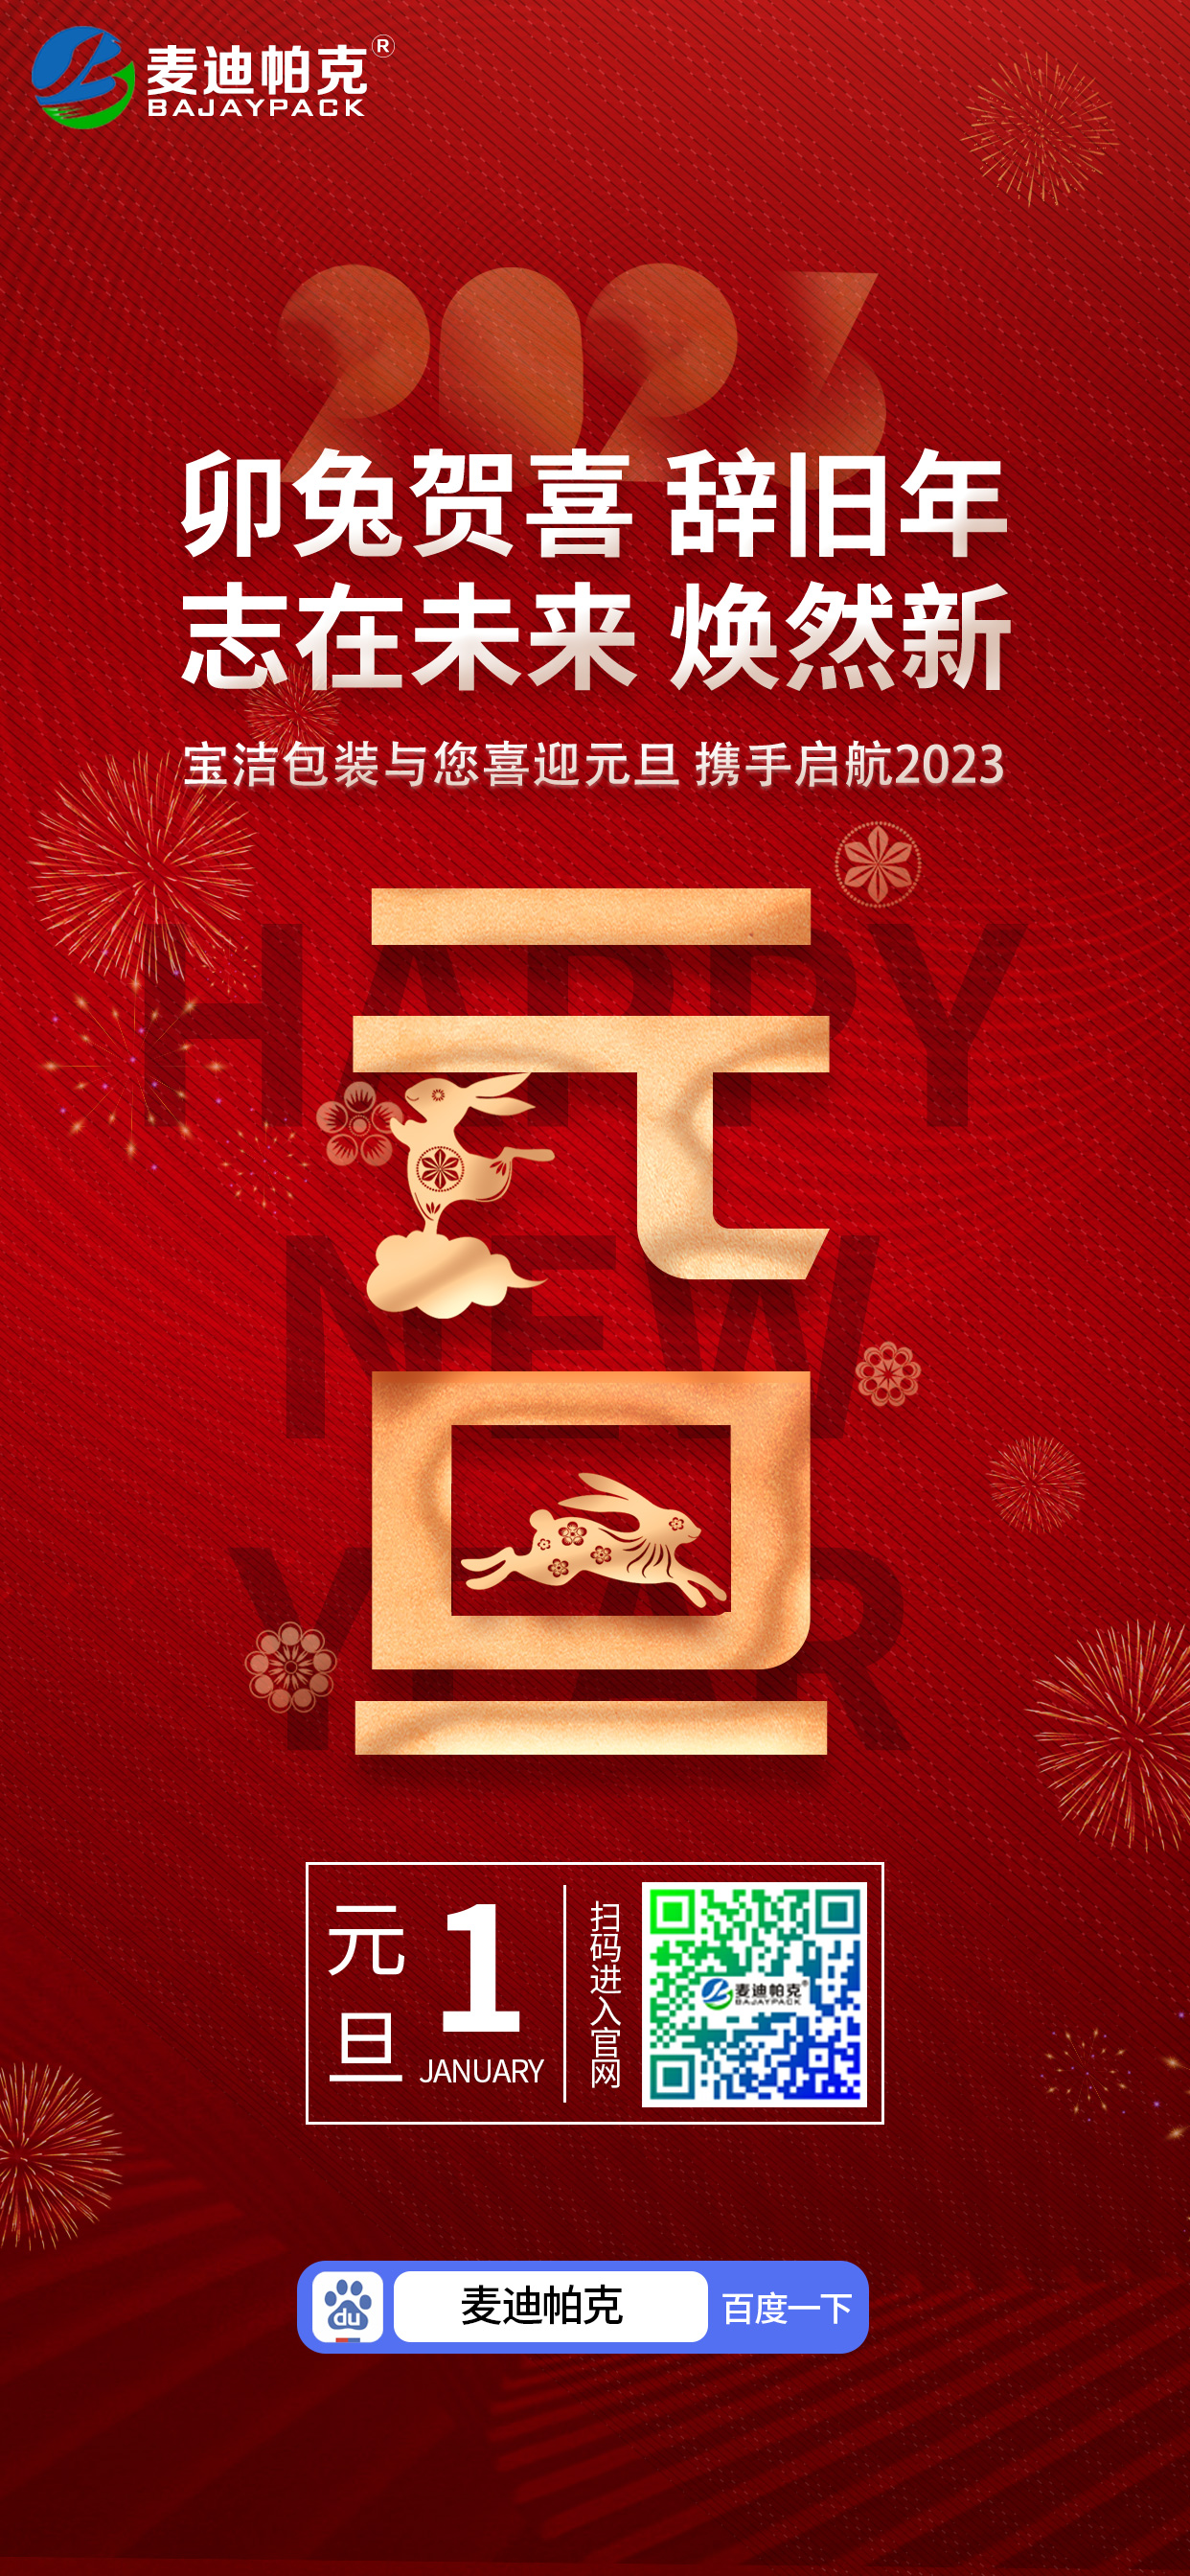 安慶市寶潔包裝有限公司祝大家元旦快樂！